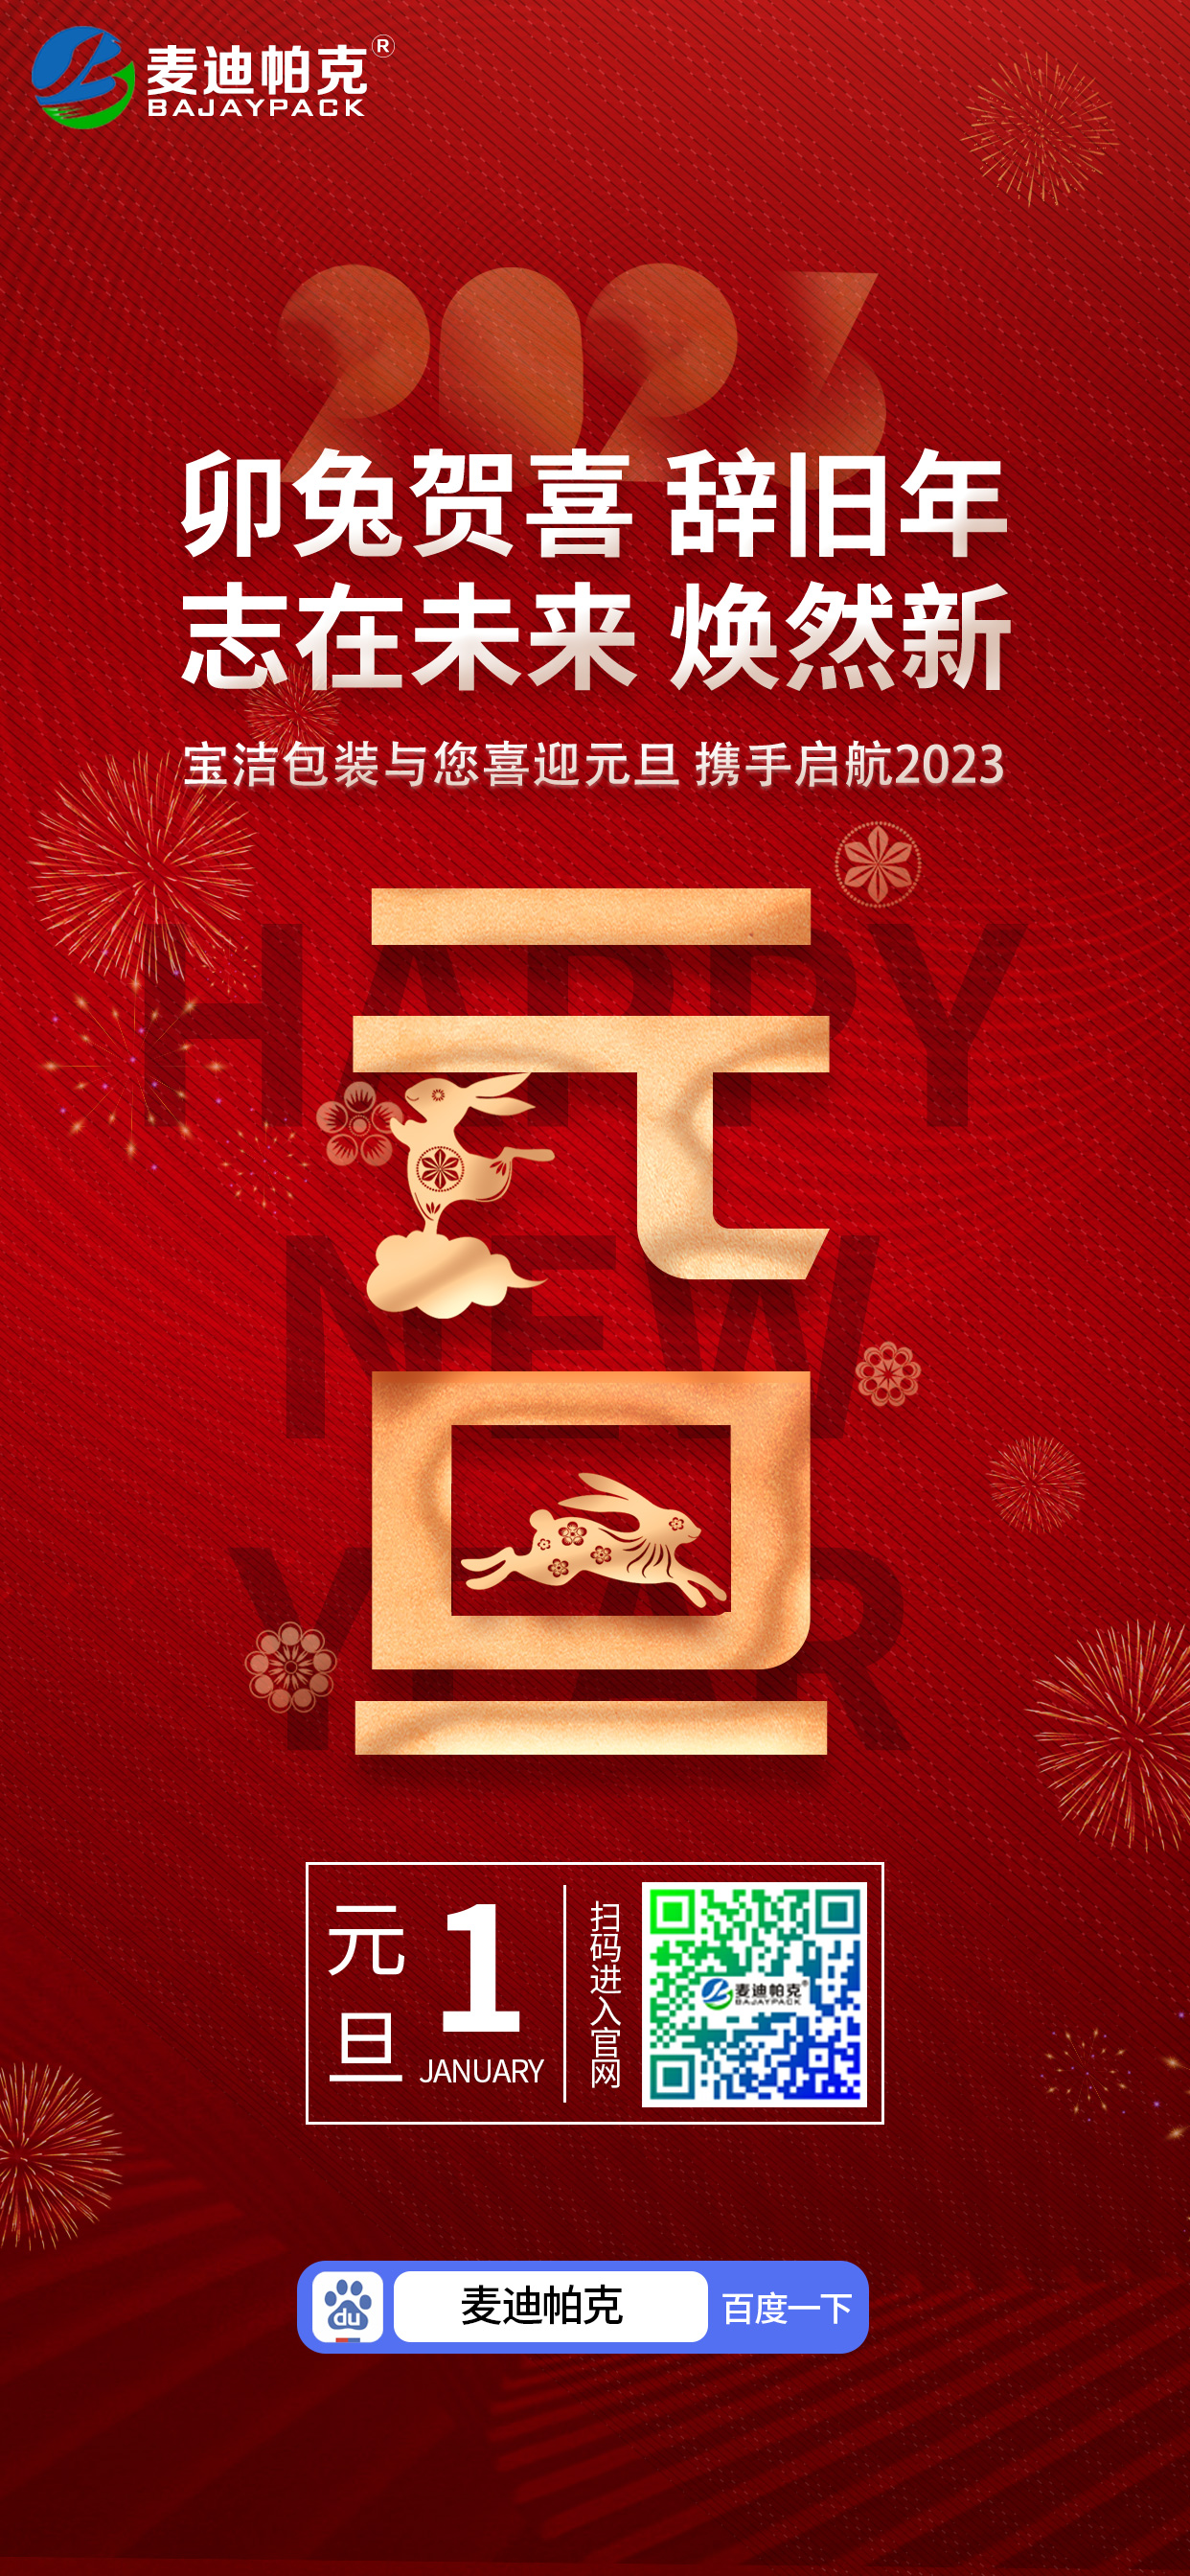 安慶市寶潔包裝有限公司祝大家元旦快樂！